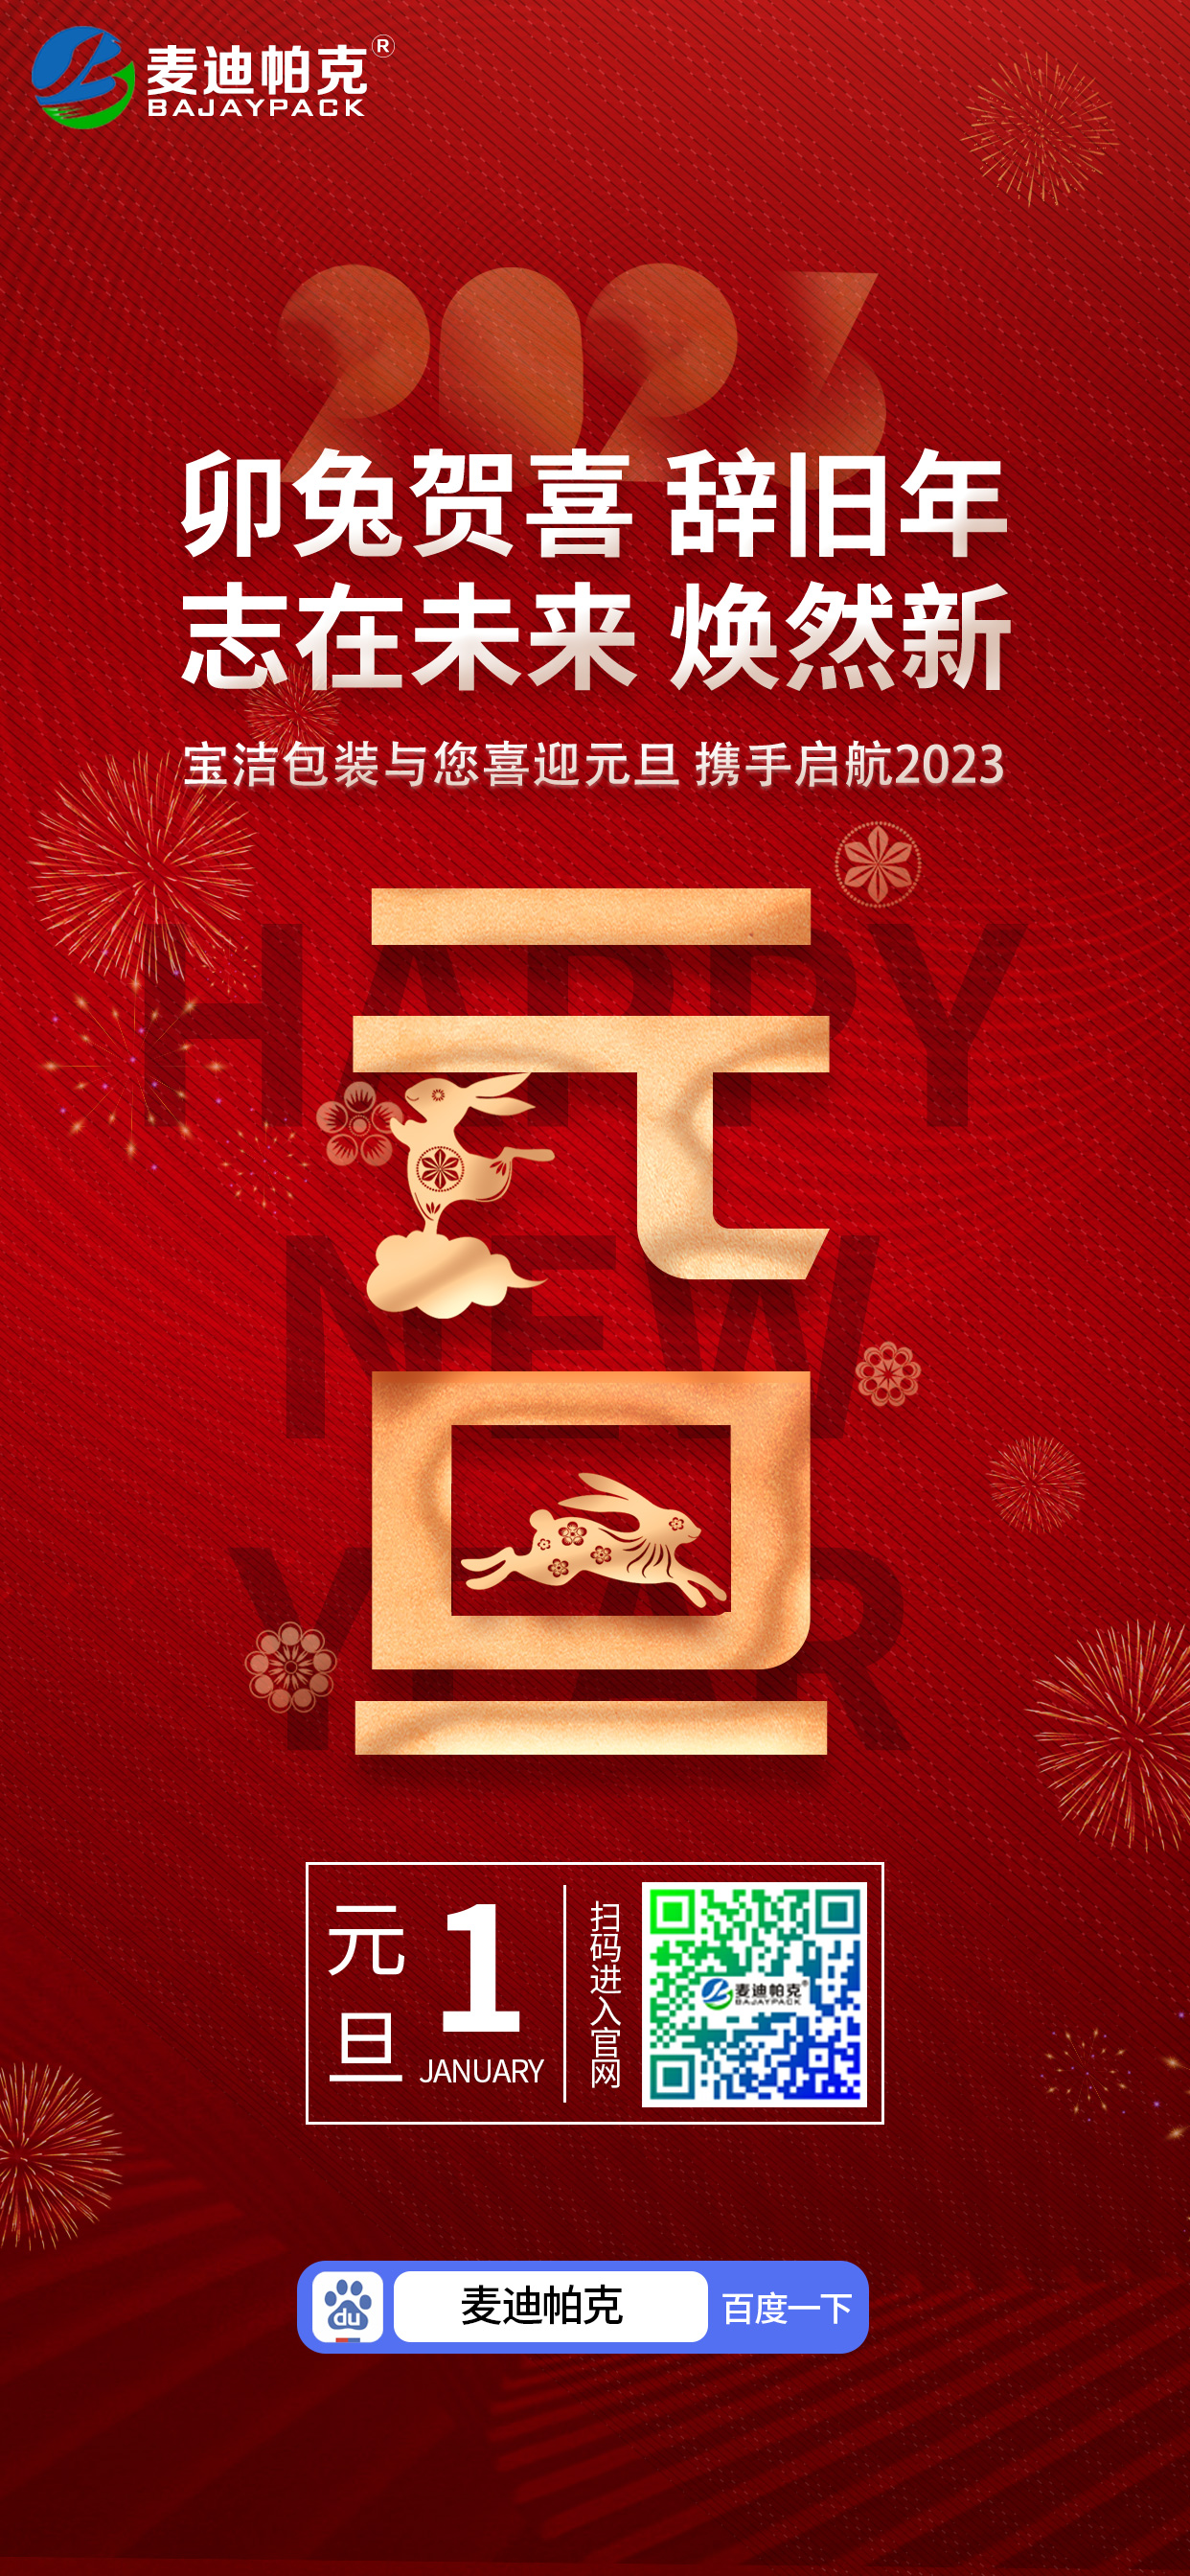 安慶市寶潔包裝有限公司祝大家元旦快樂！